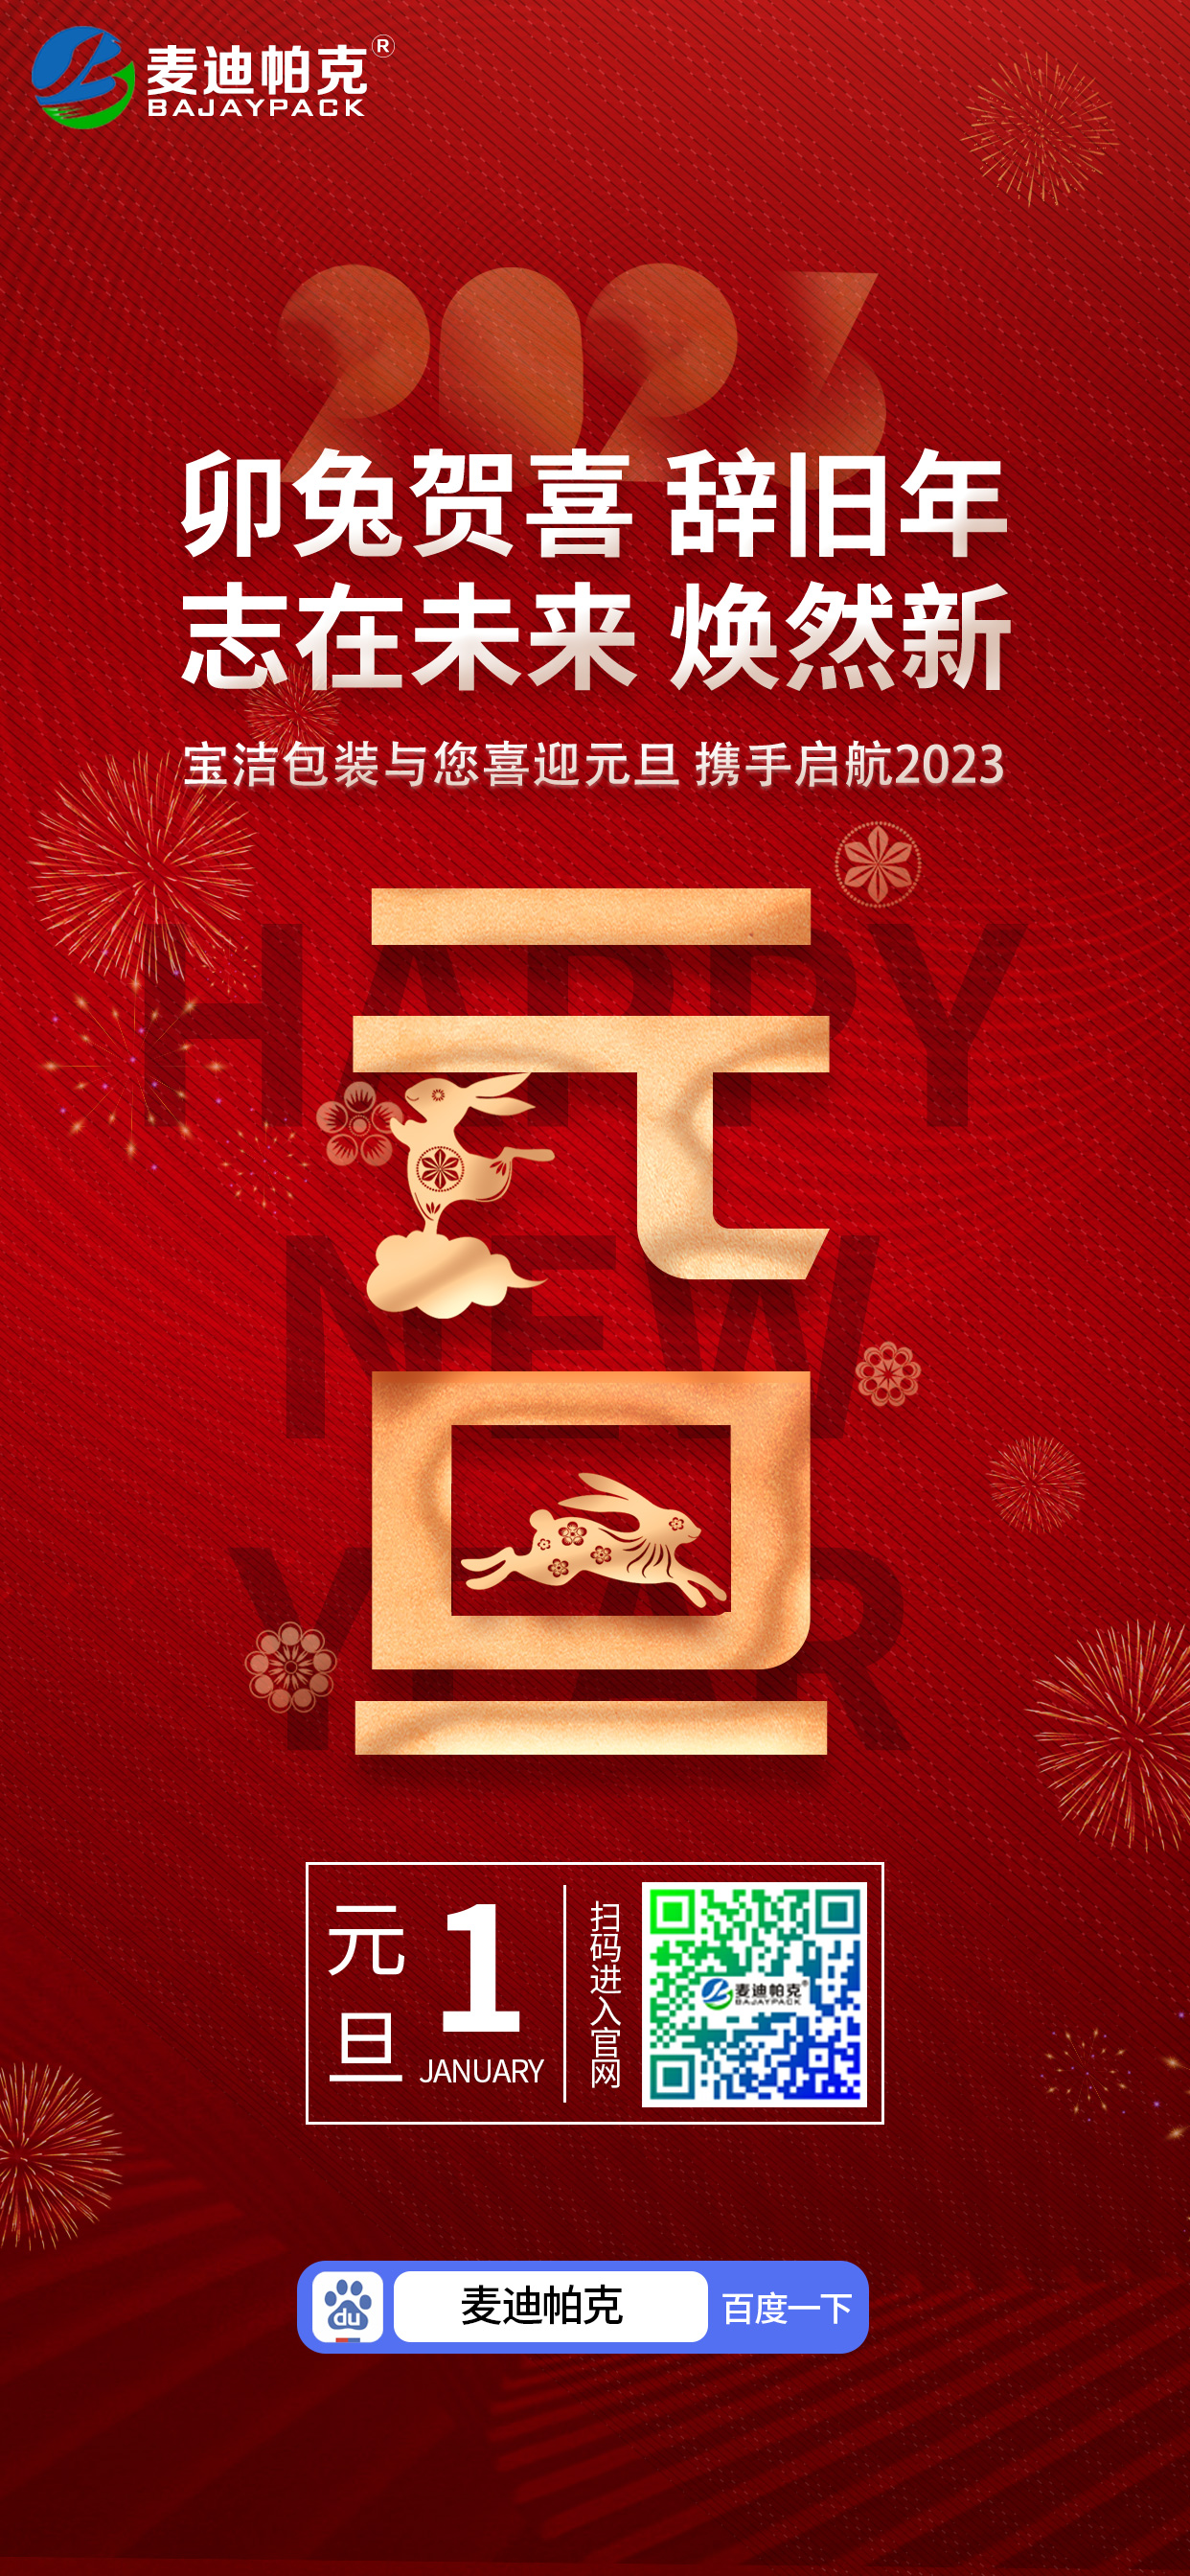 安慶市寶潔包裝有限公司祝大家元旦快樂！